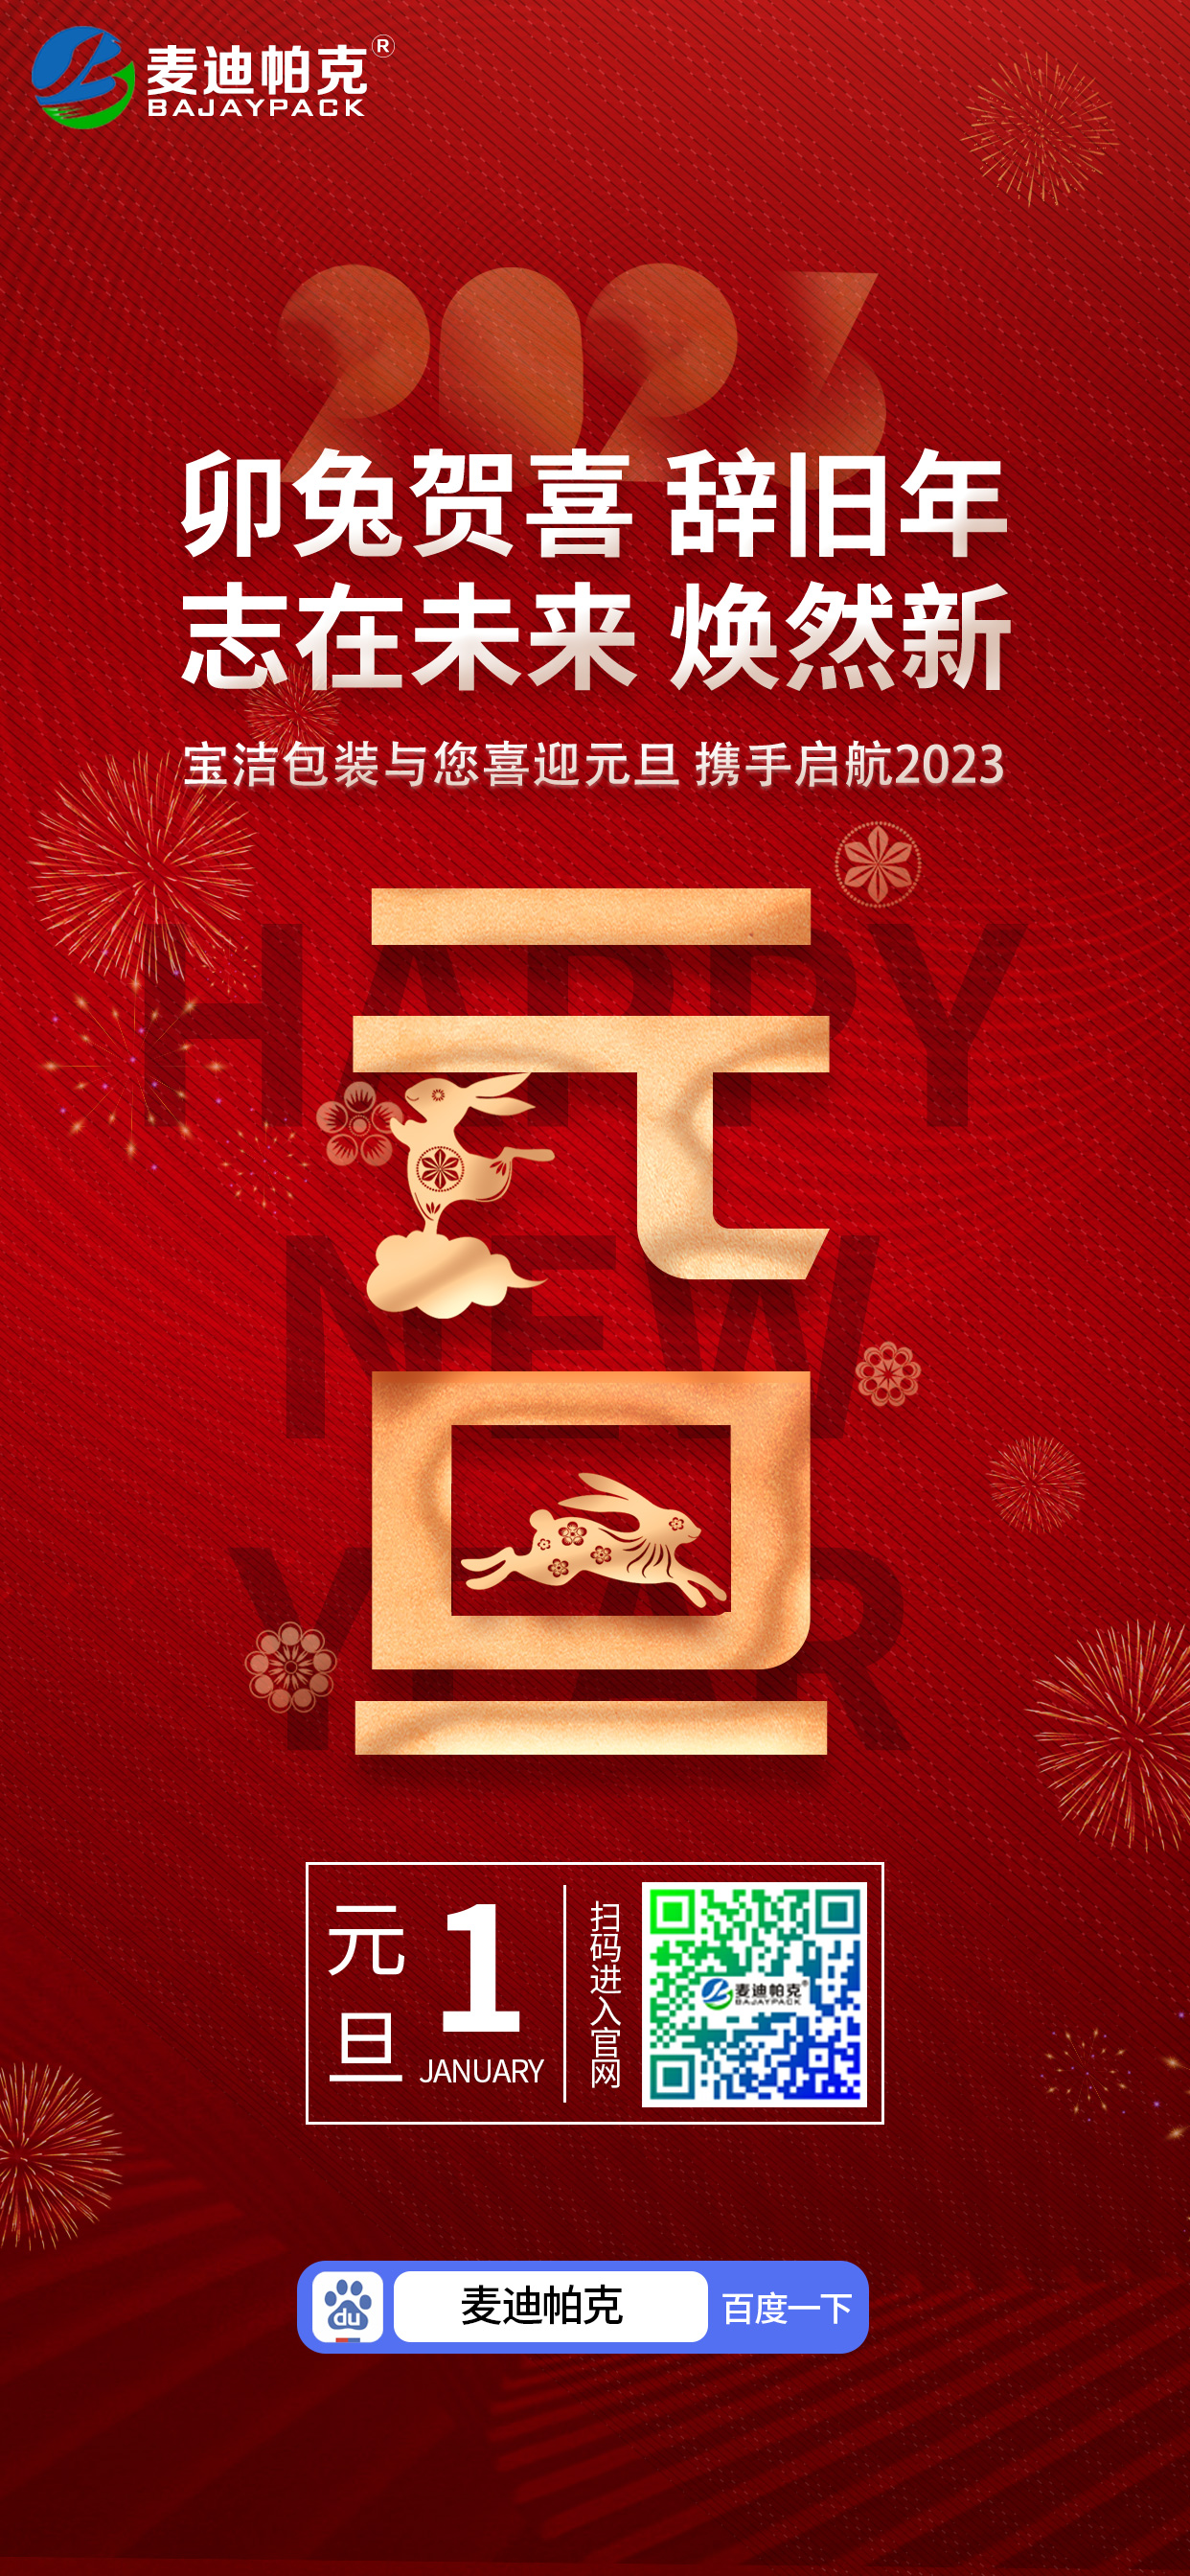 安慶市寶潔包裝有限公司祝大家元旦快樂！